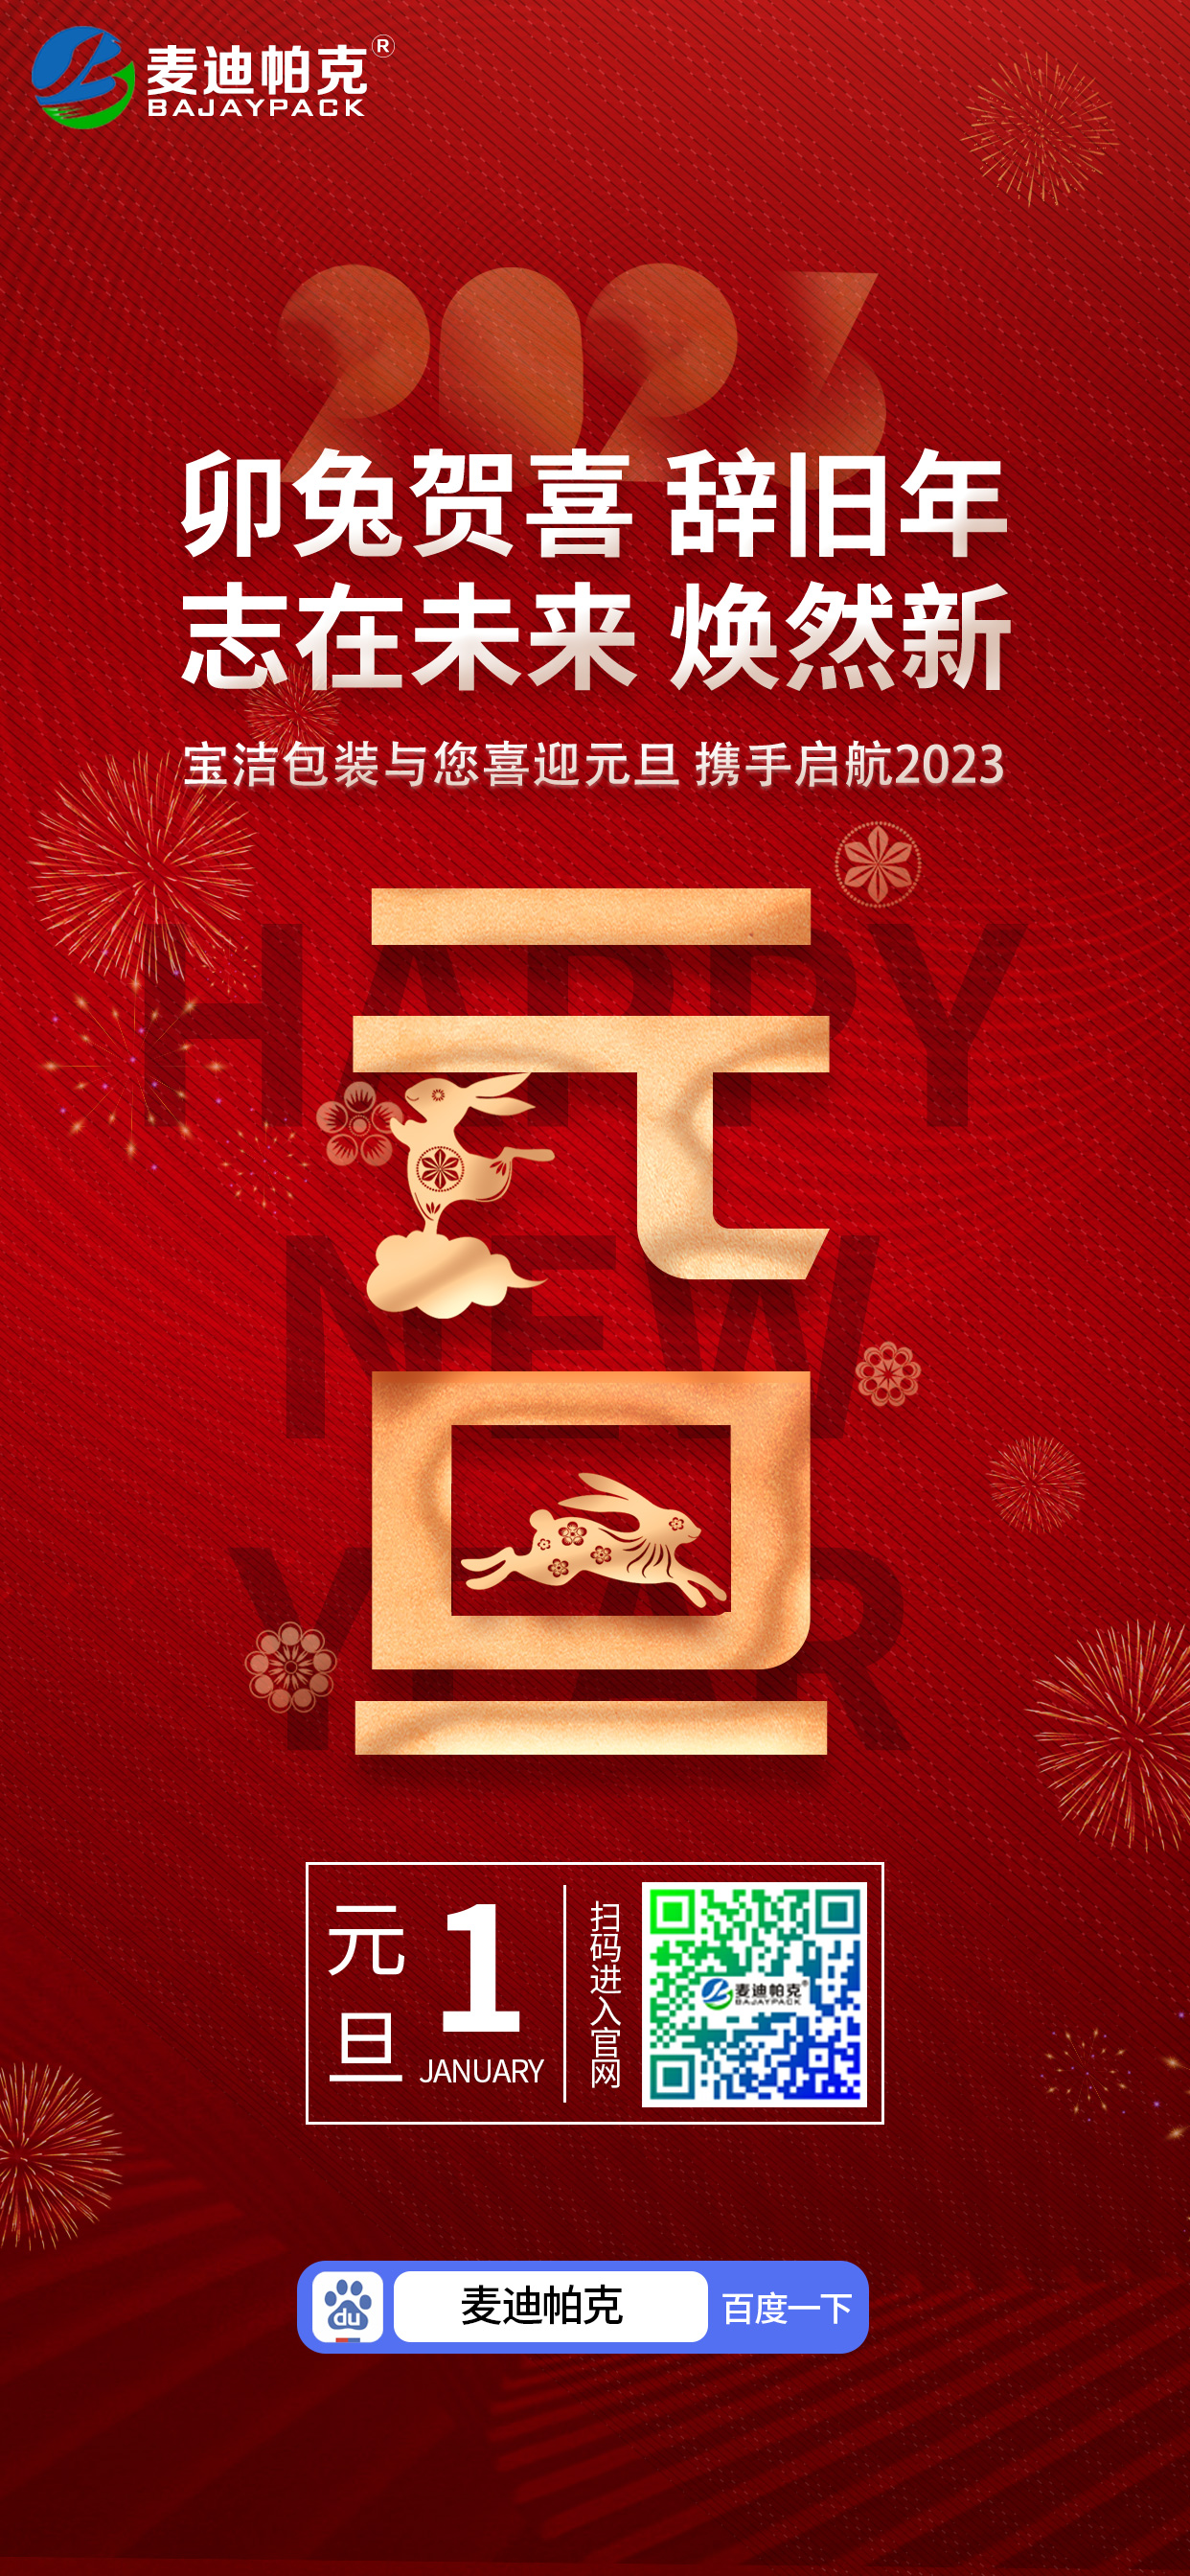 安慶市寶潔包裝有限公司祝大家元旦快樂！